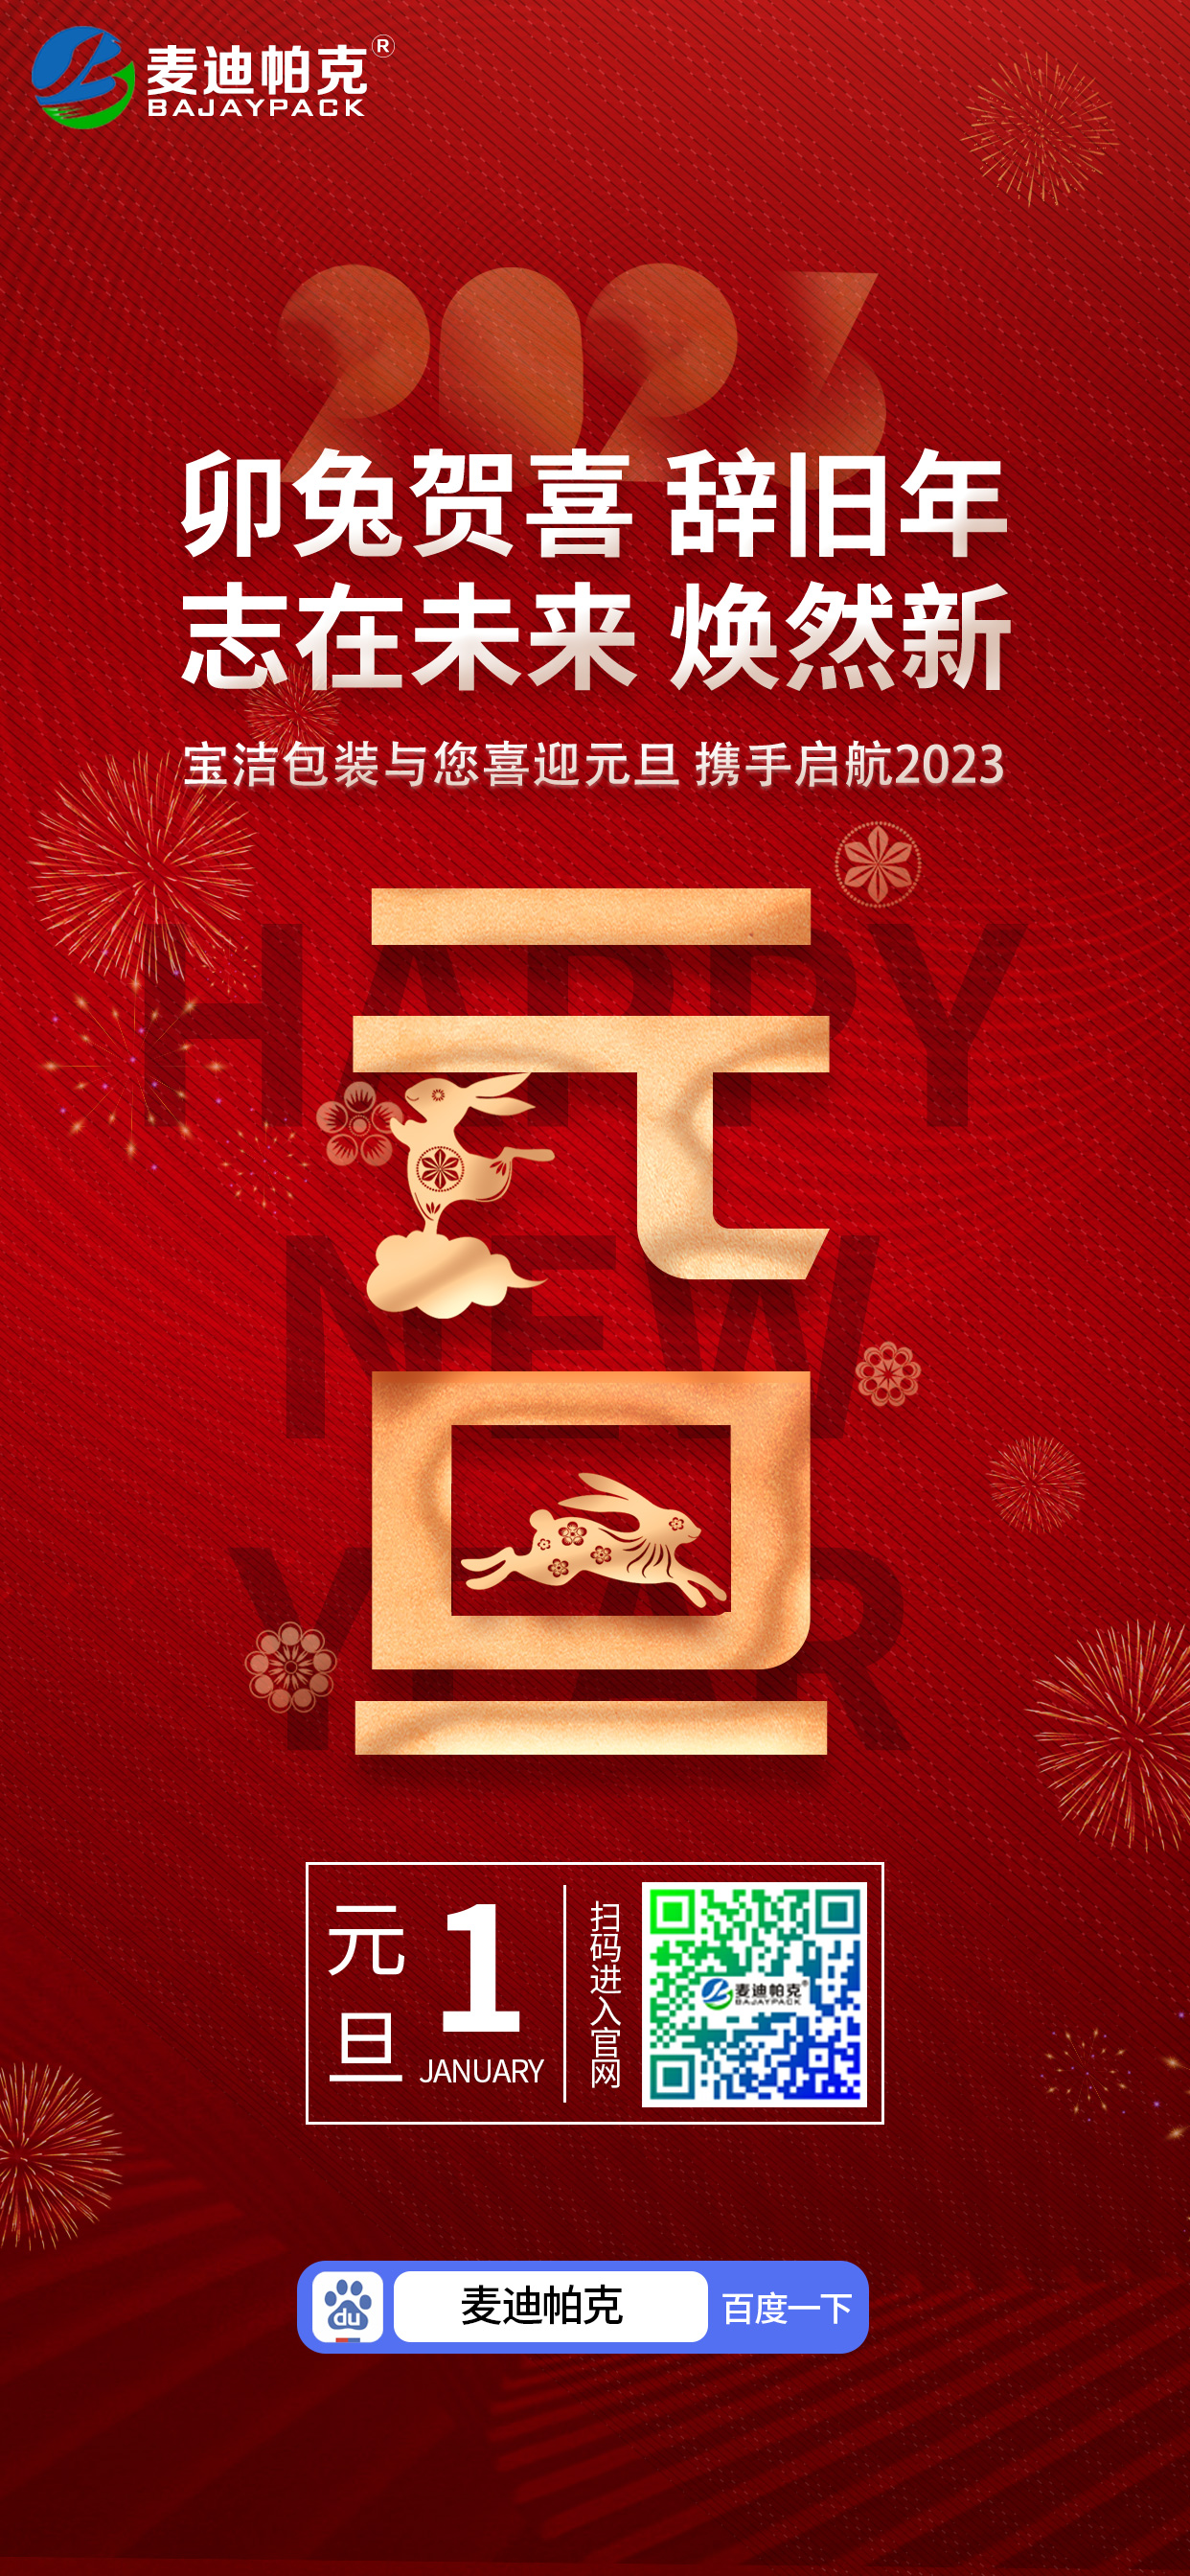 安慶市寶潔包裝有限公司祝大家元旦快樂！